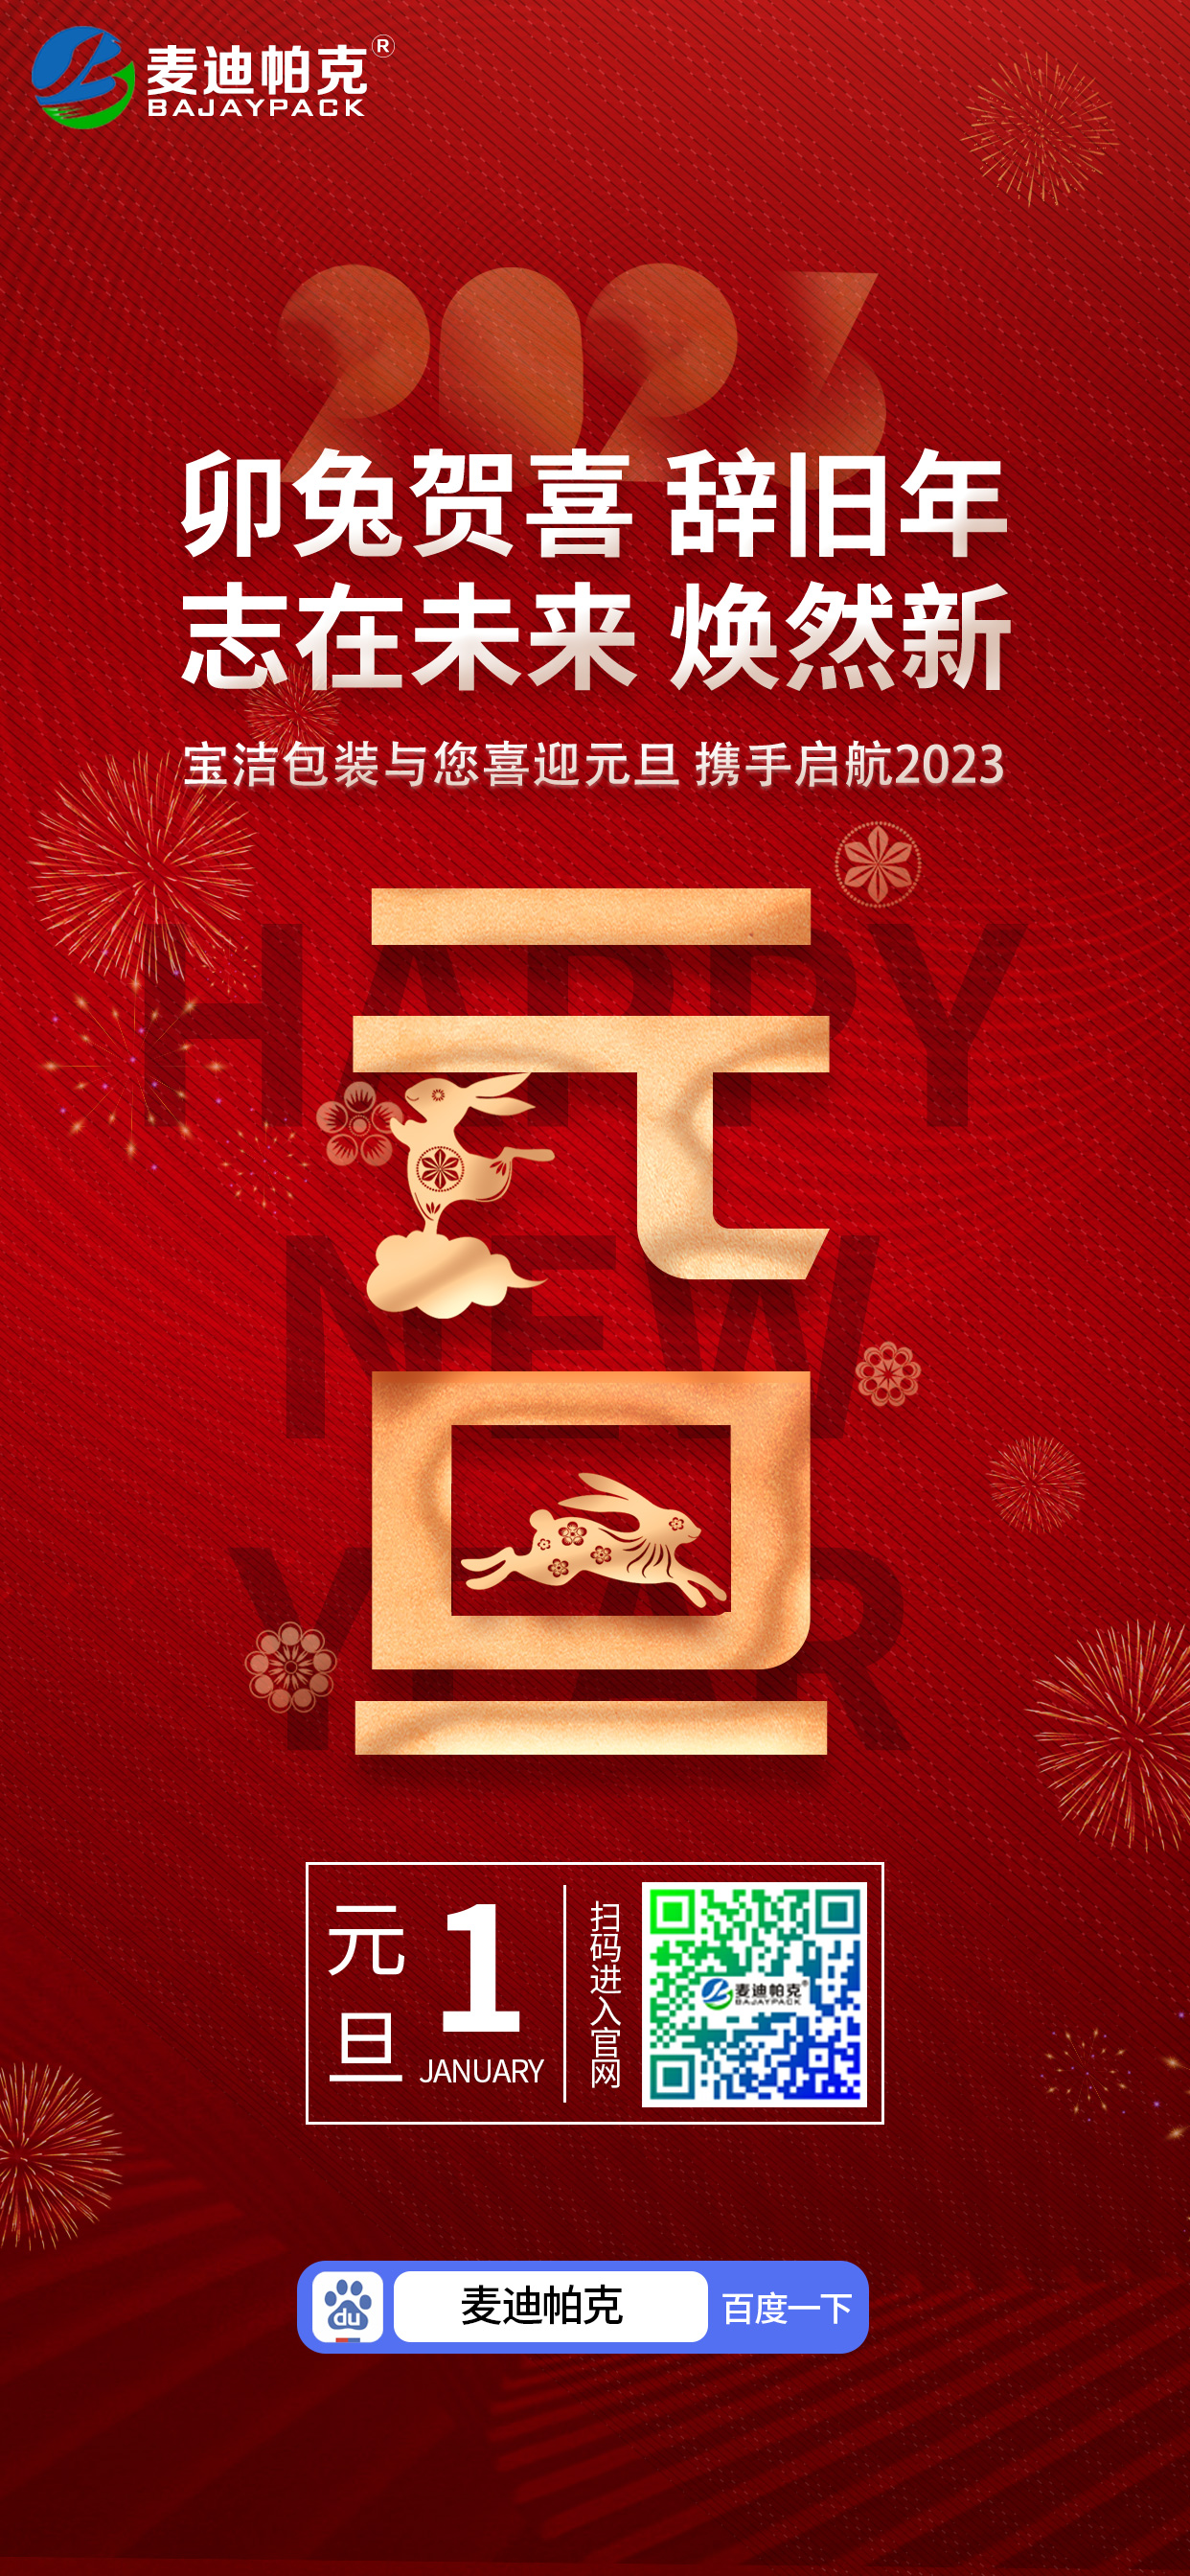 安慶市寶潔包裝有限公司祝大家元旦快樂！